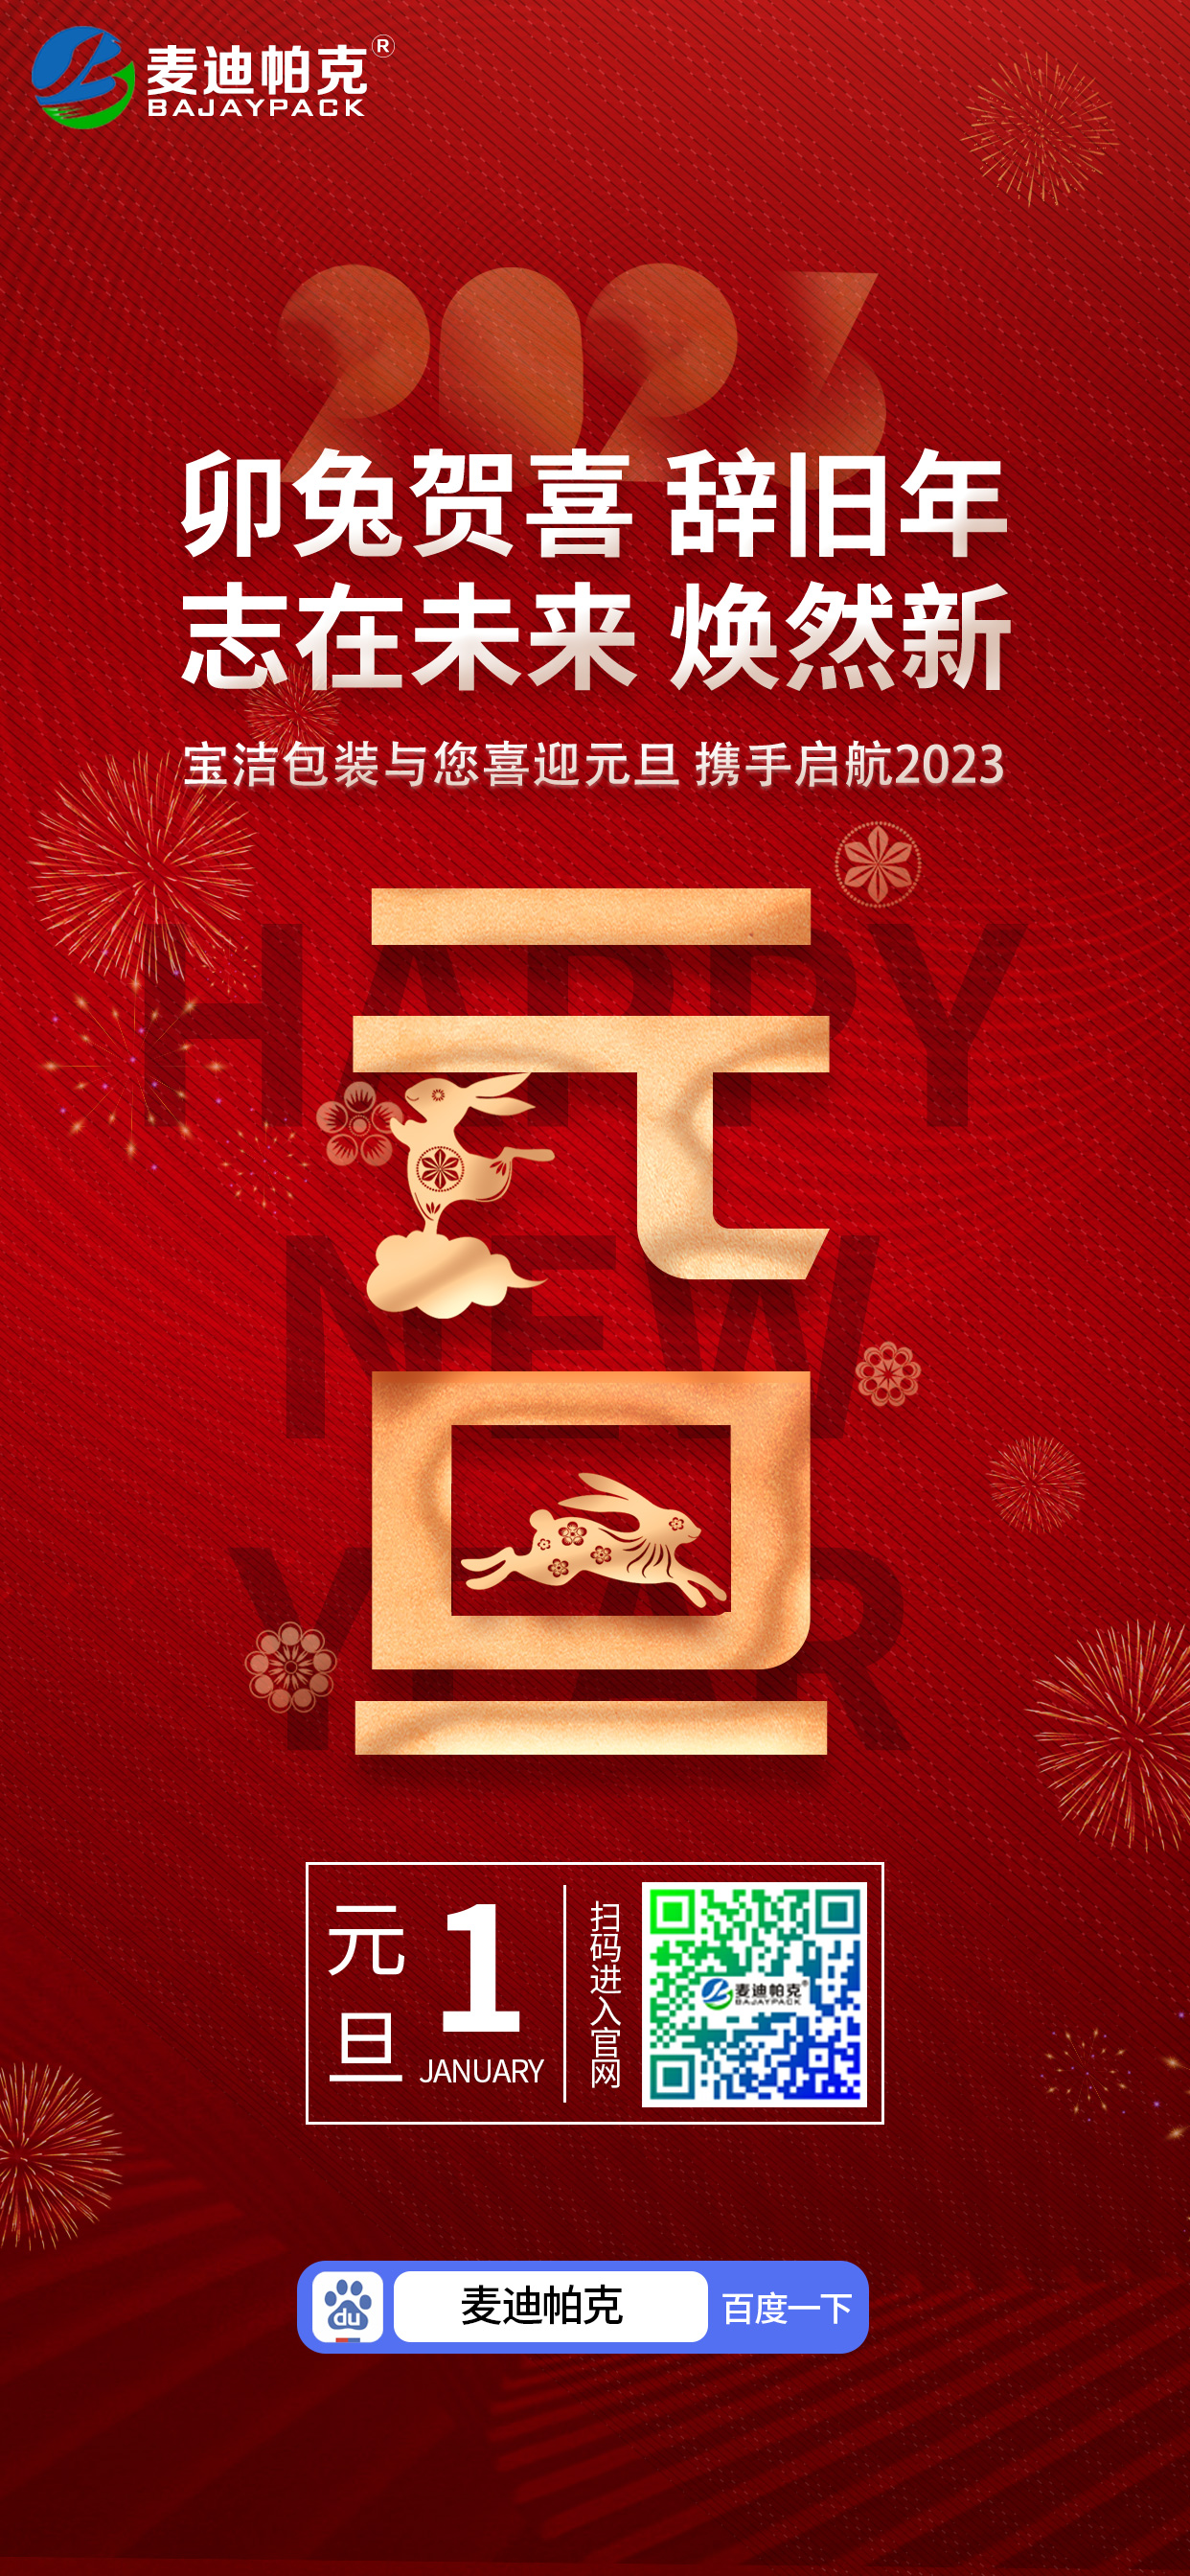 安慶市寶潔包裝有限公司祝大家元旦快樂！